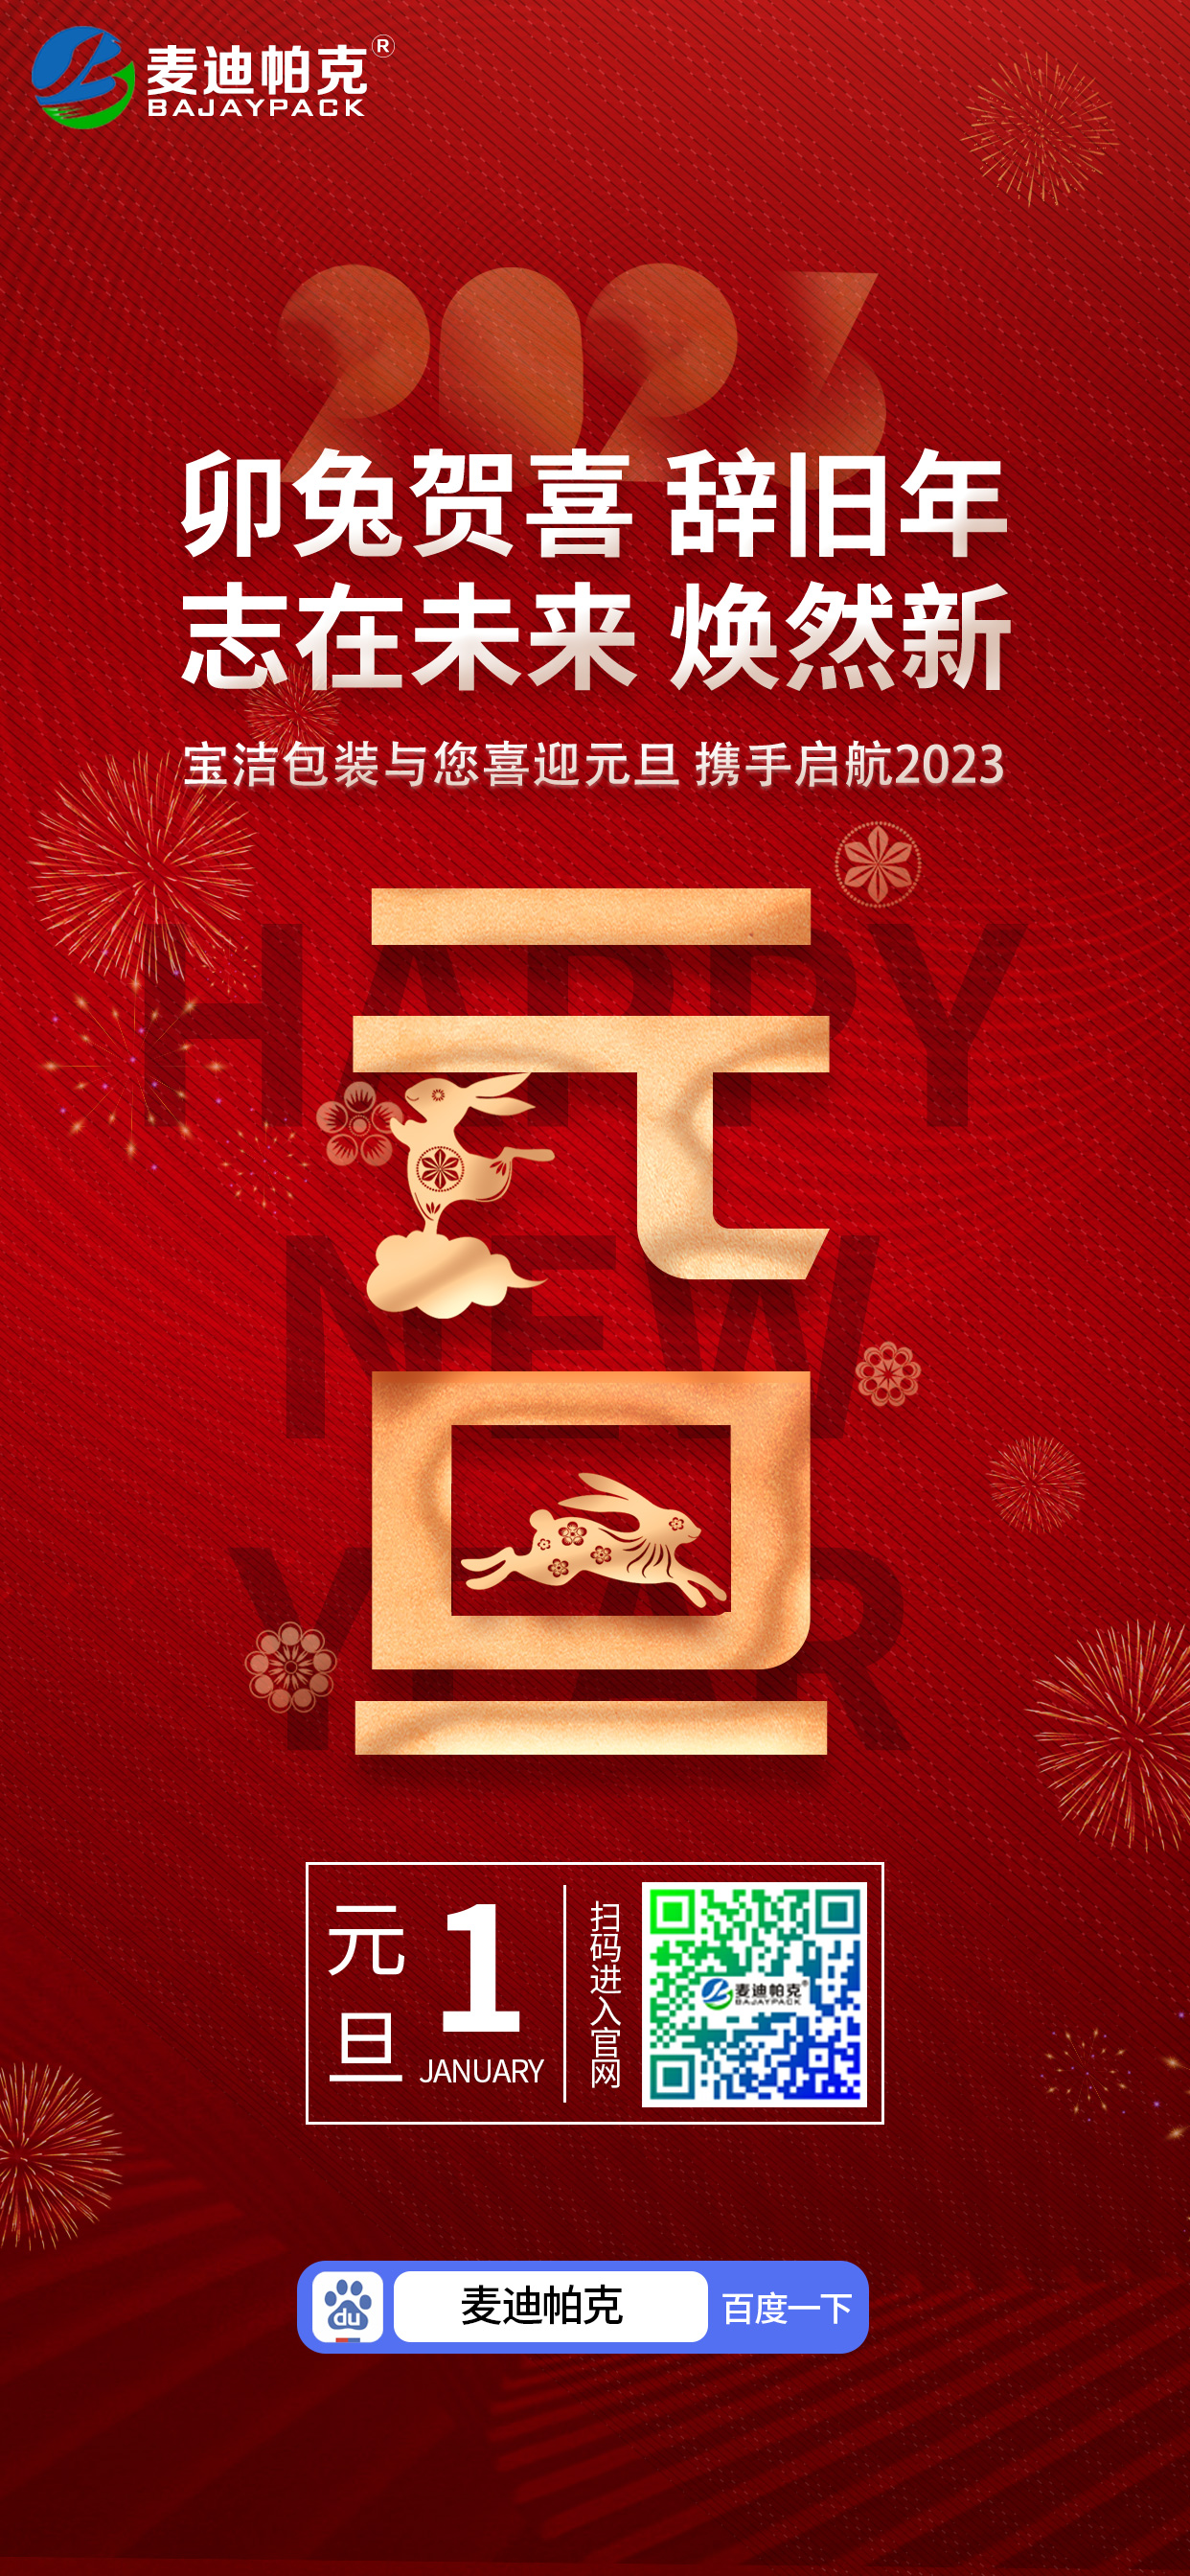 安慶市寶潔包裝有限公司祝大家元旦快樂！